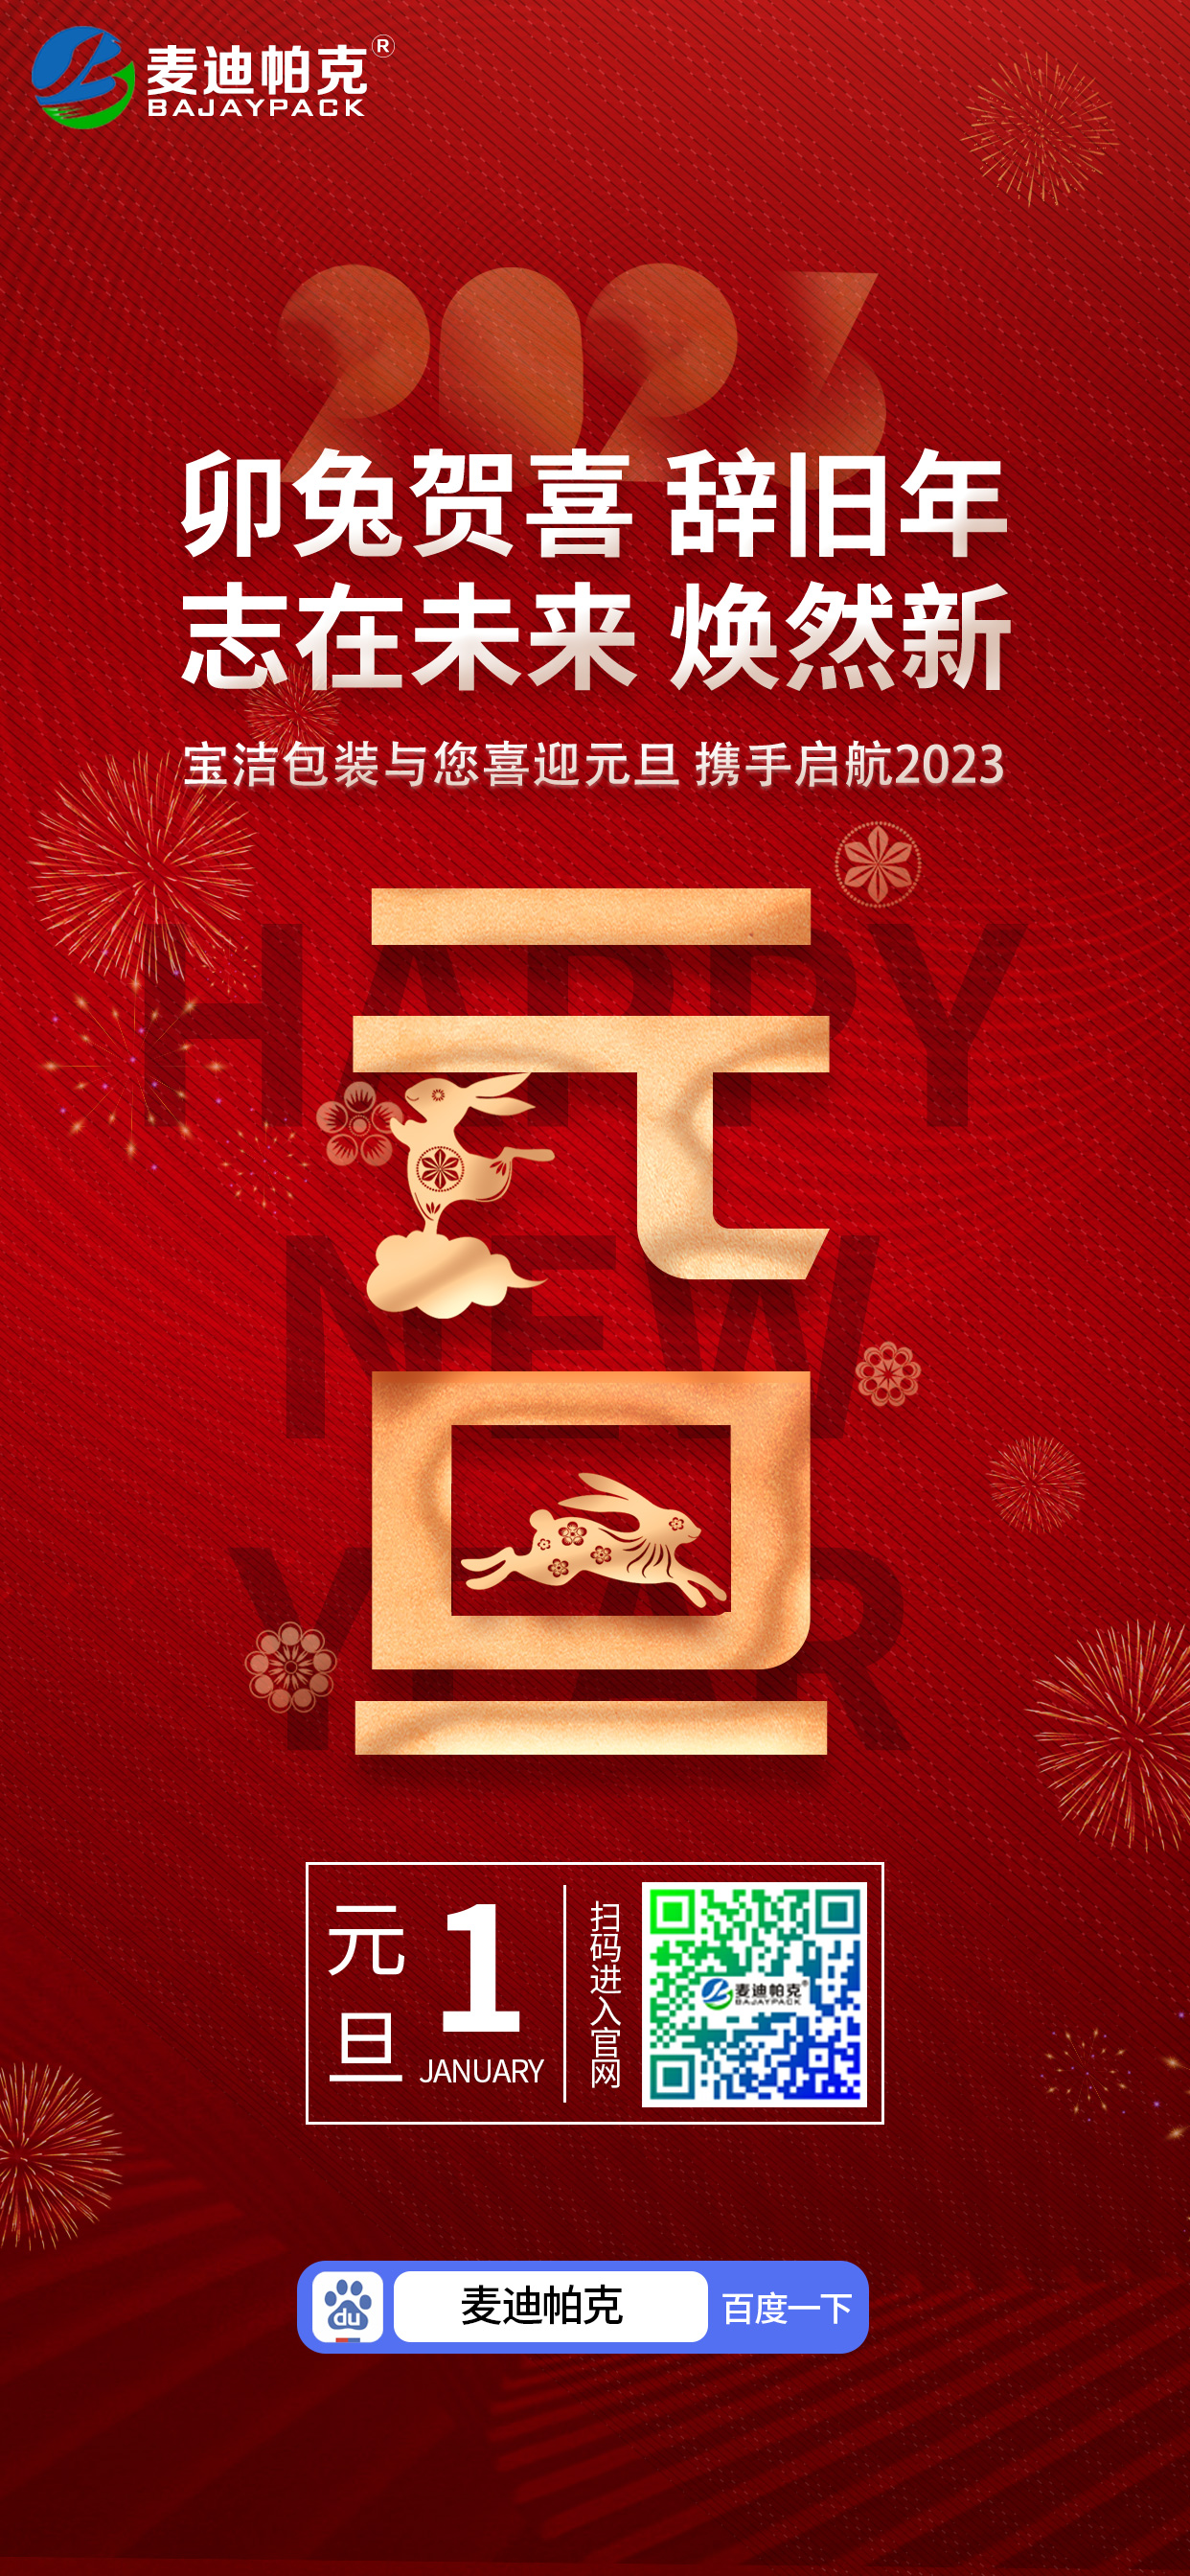 安慶市寶潔包裝有限公司祝大家元旦快樂！